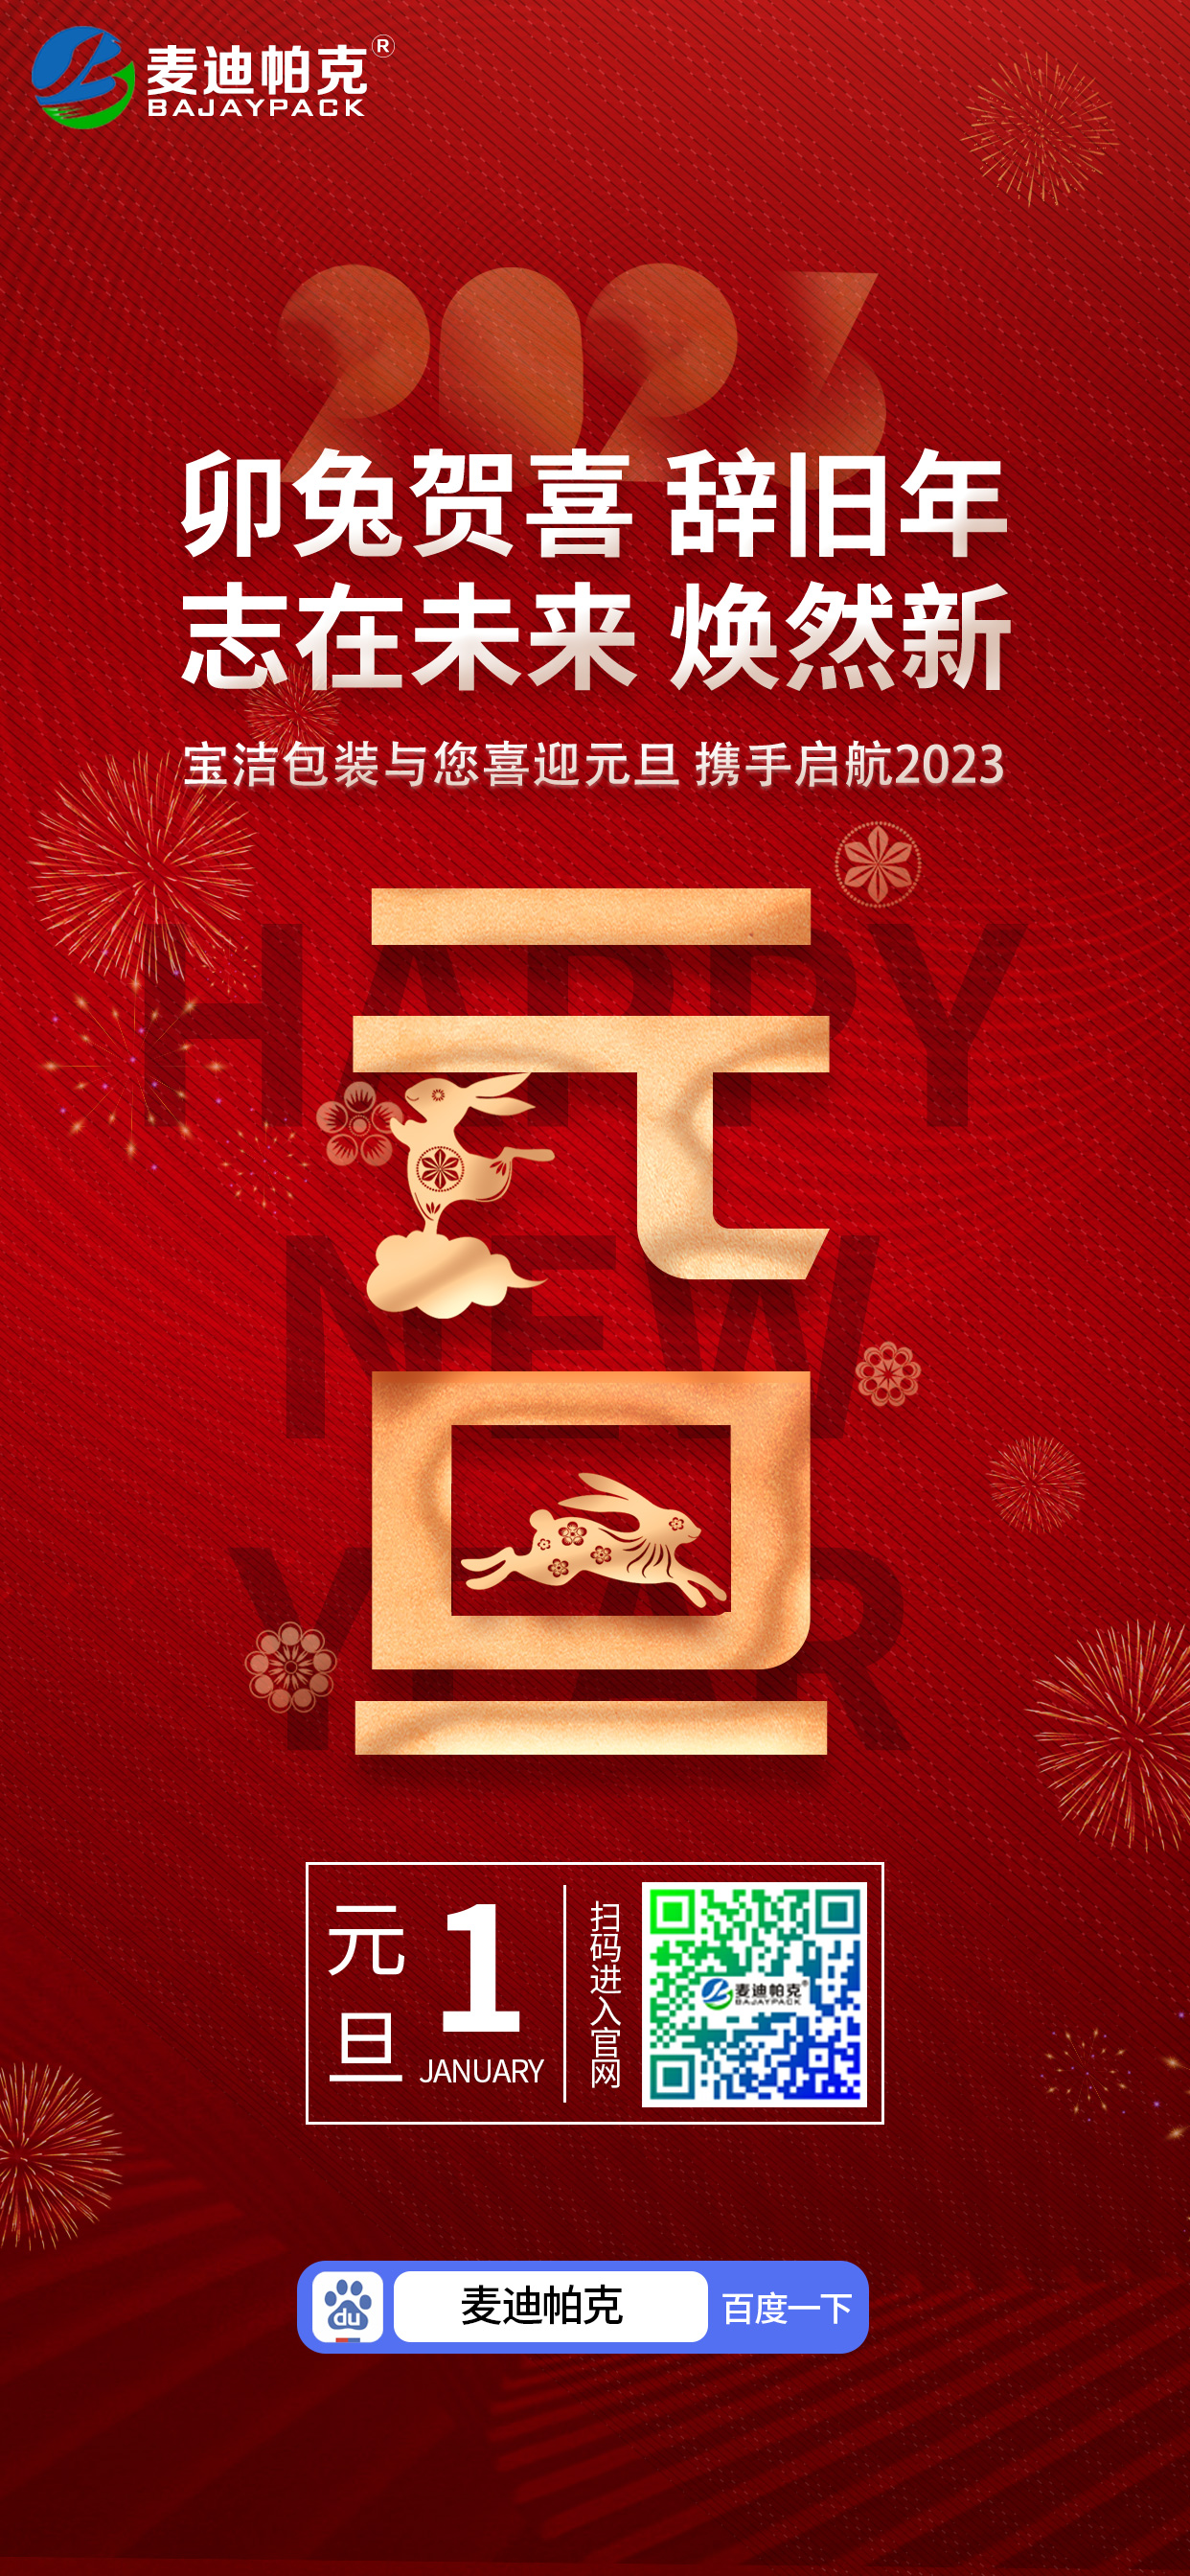 安慶市寶潔包裝有限公司祝大家元旦快樂！